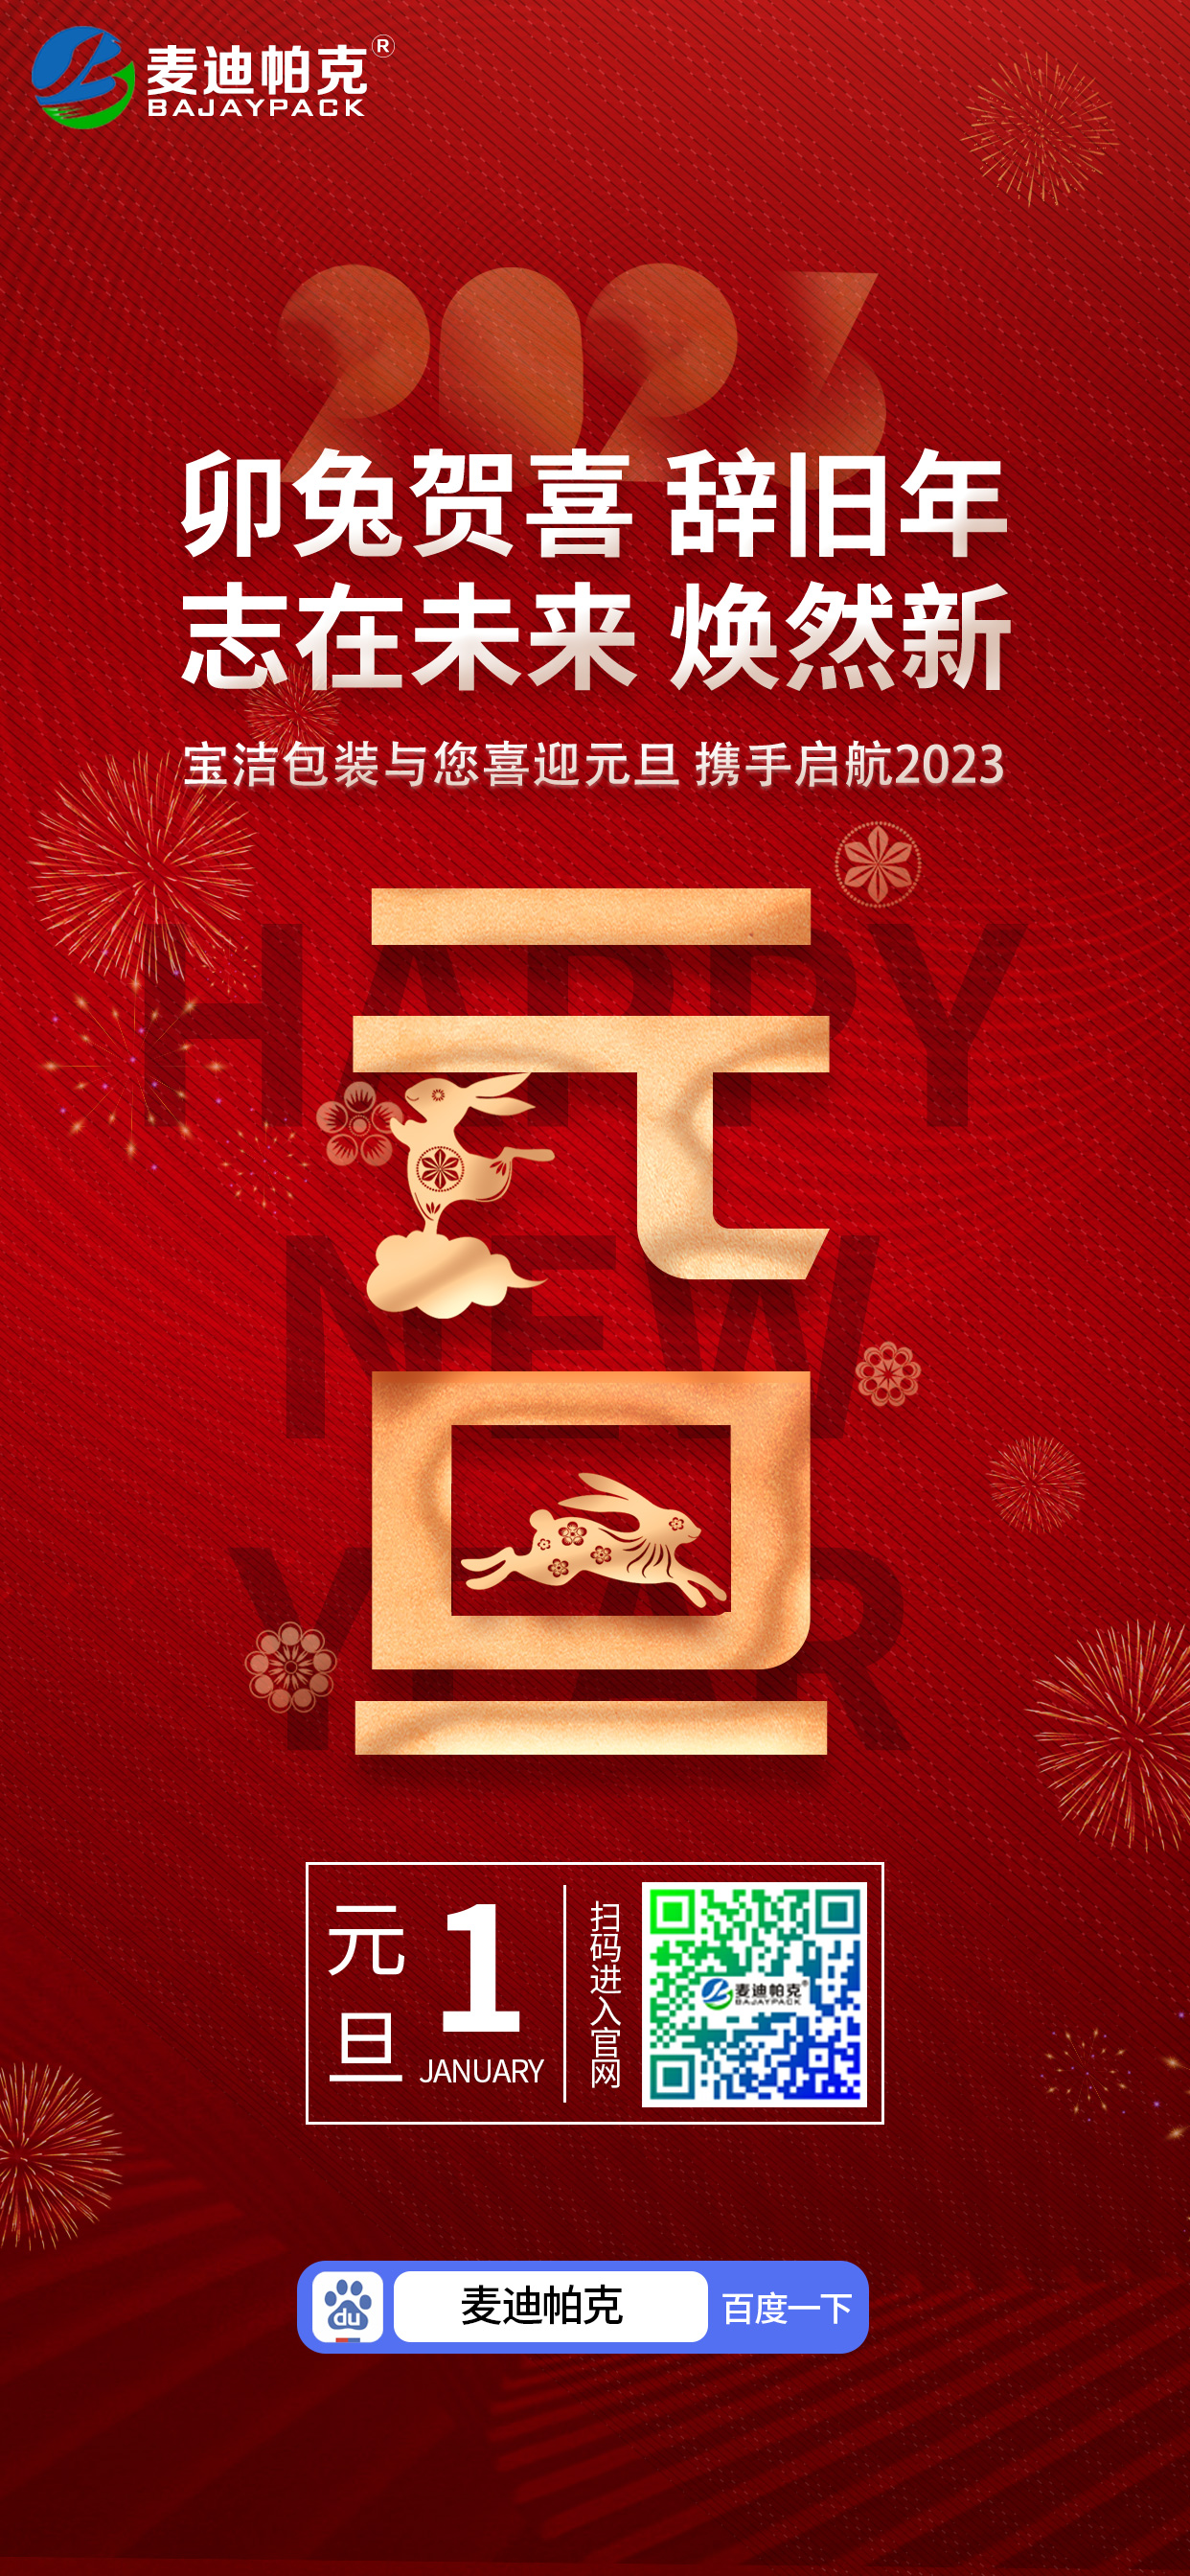 安慶市寶潔包裝有限公司祝大家元旦快樂！